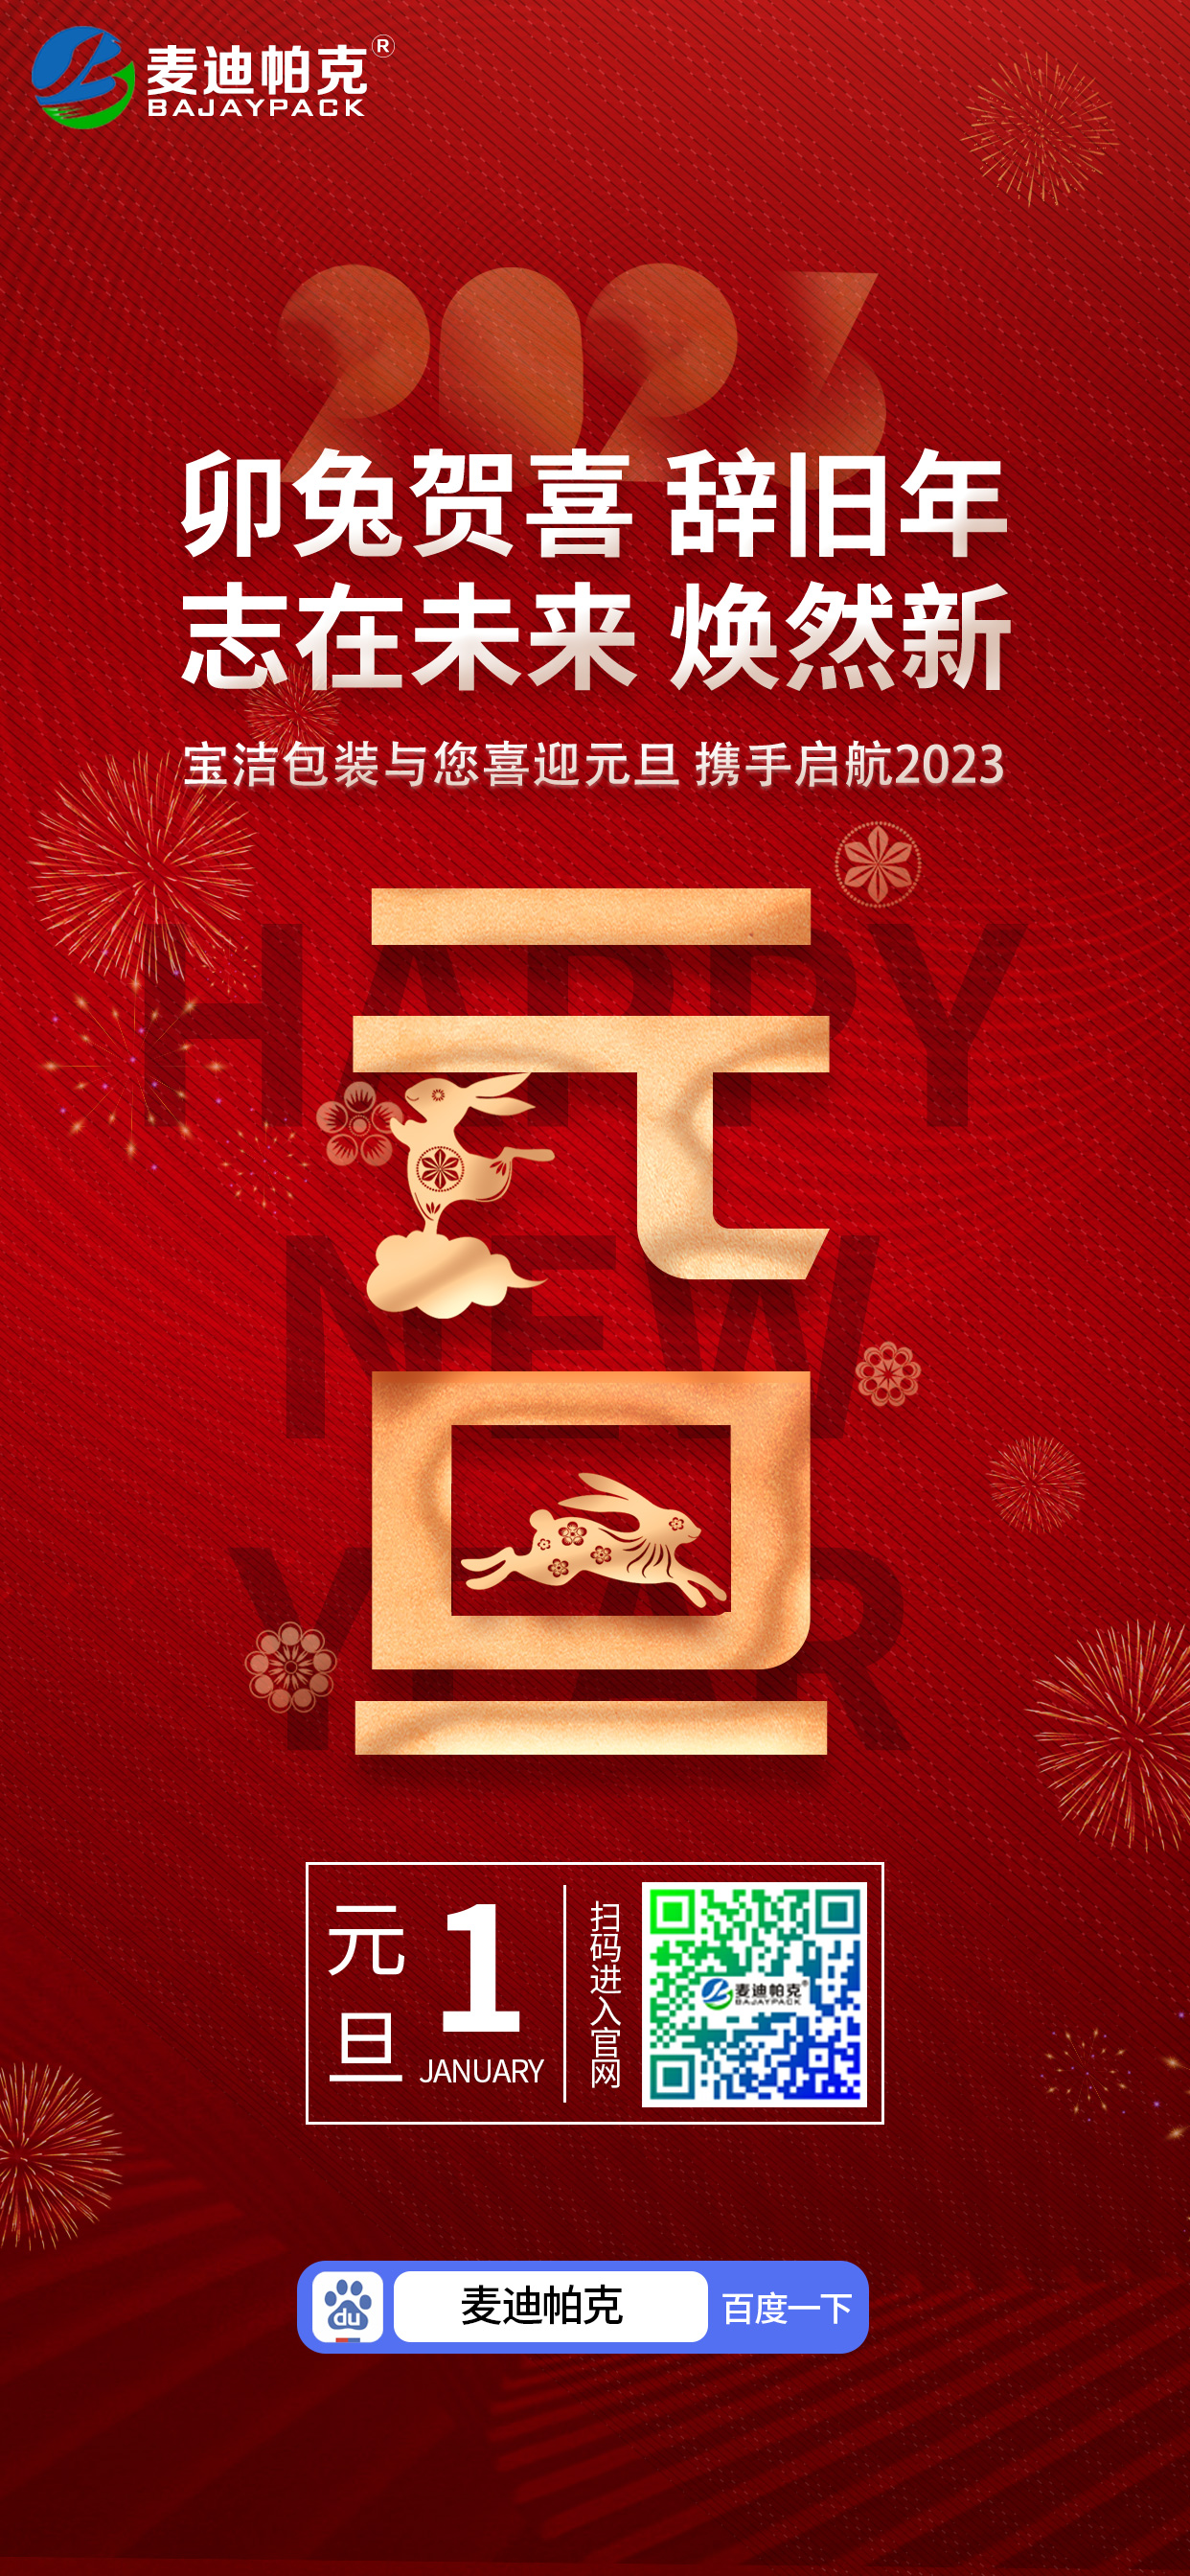 安慶市寶潔包裝有限公司祝大家元旦快樂！